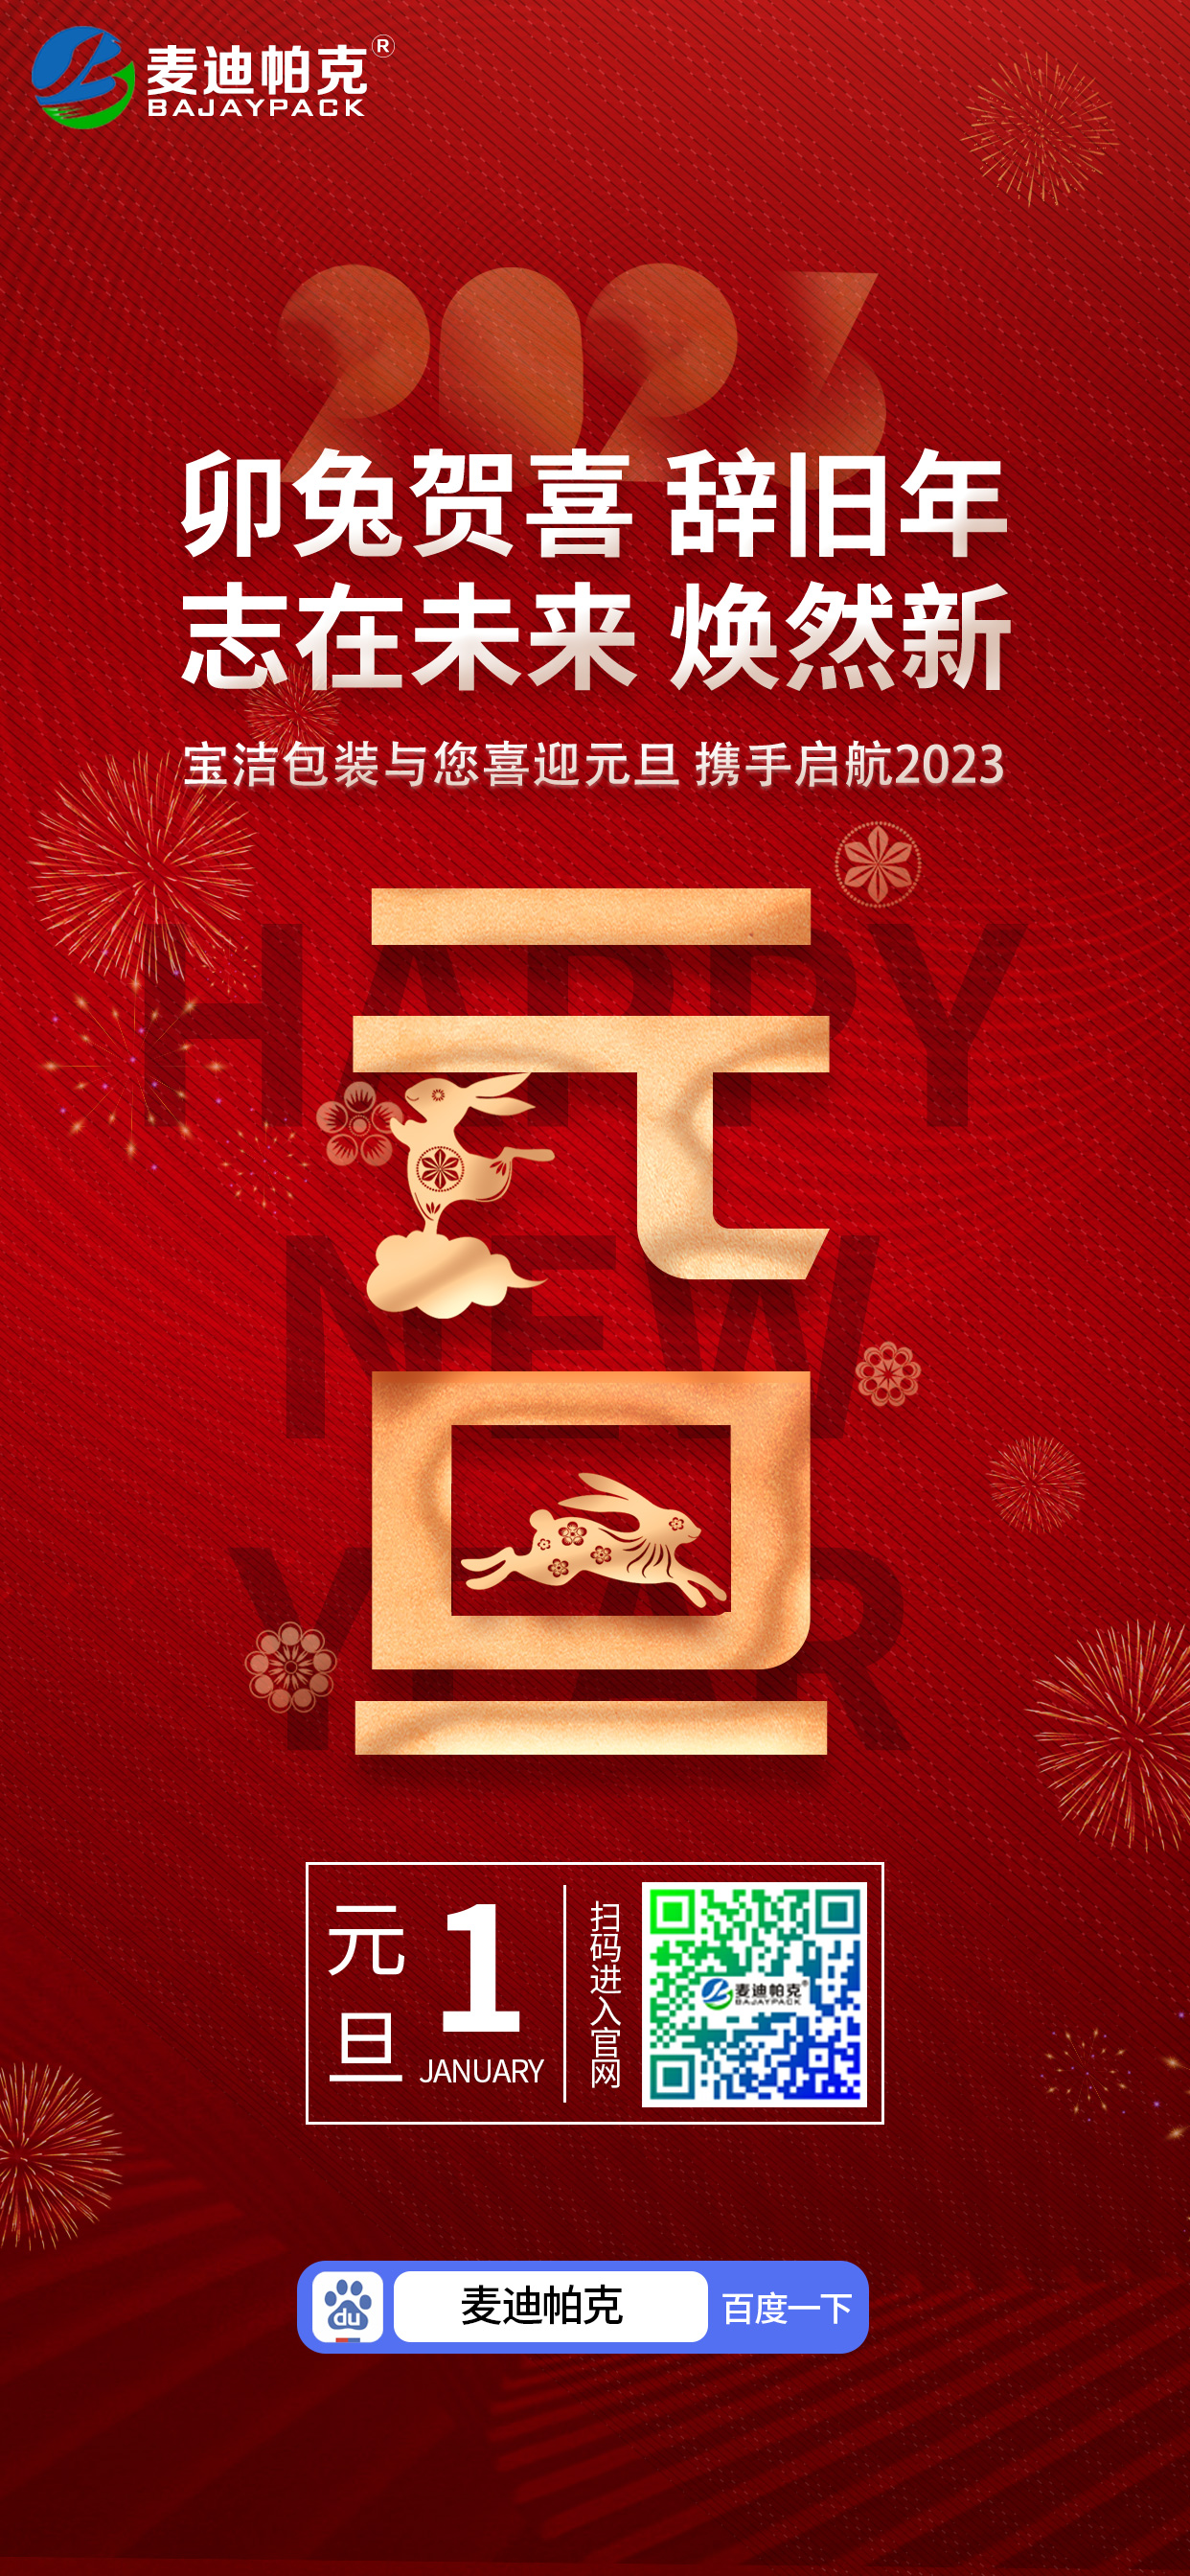 安慶市寶潔包裝有限公司祝大家元旦快樂！